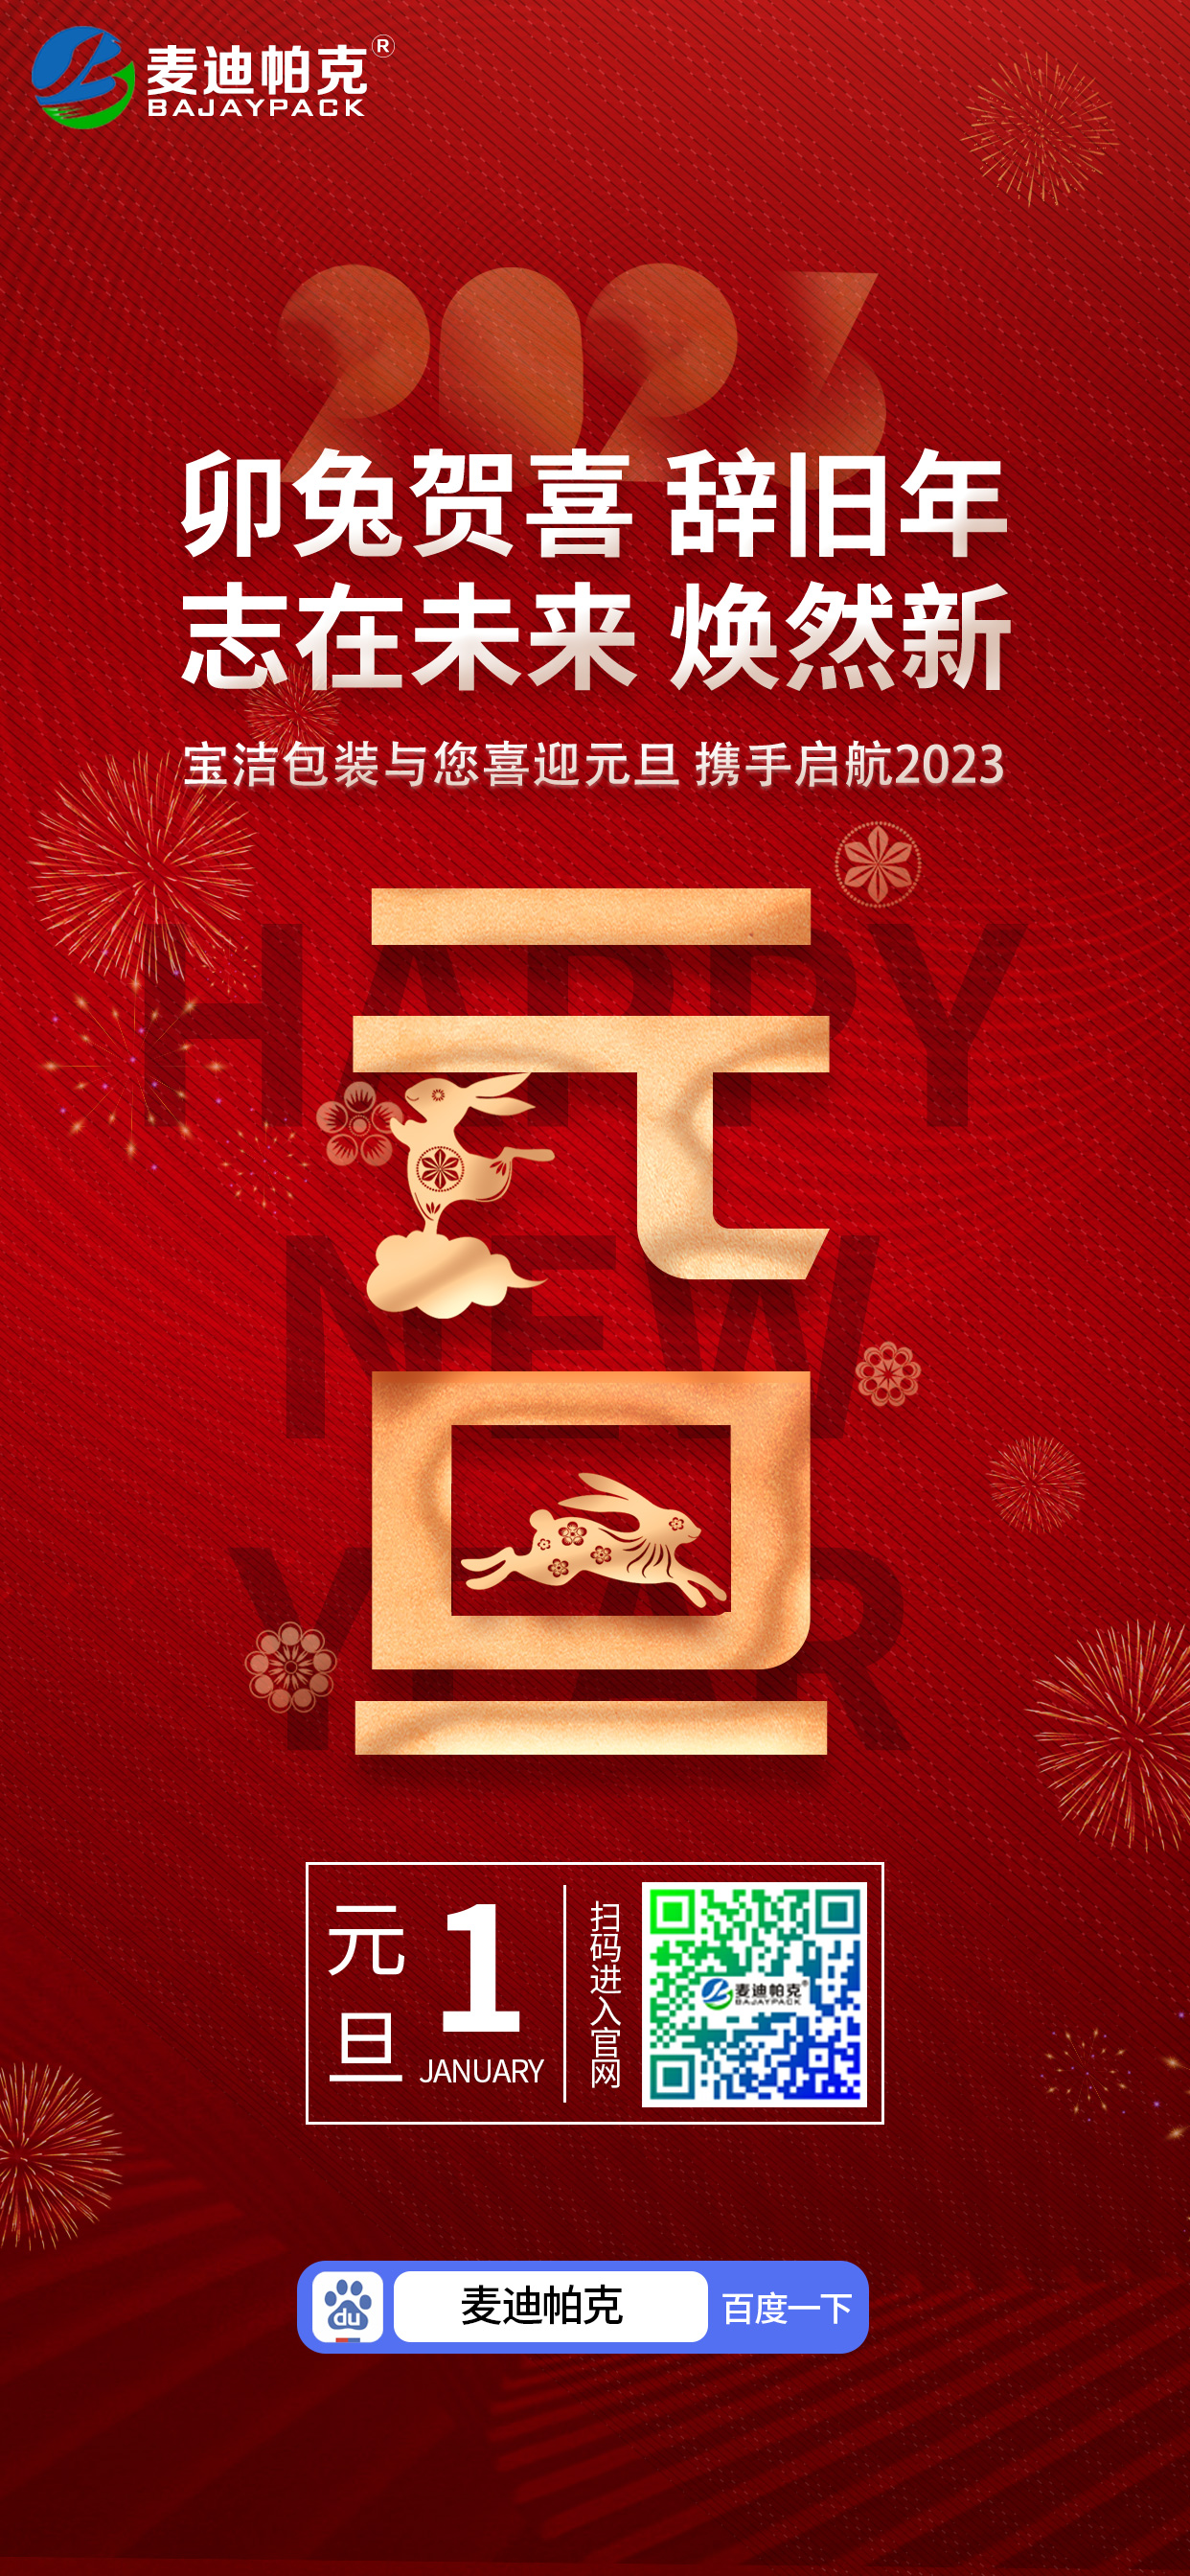 安慶市寶潔包裝有限公司祝大家元旦快樂！